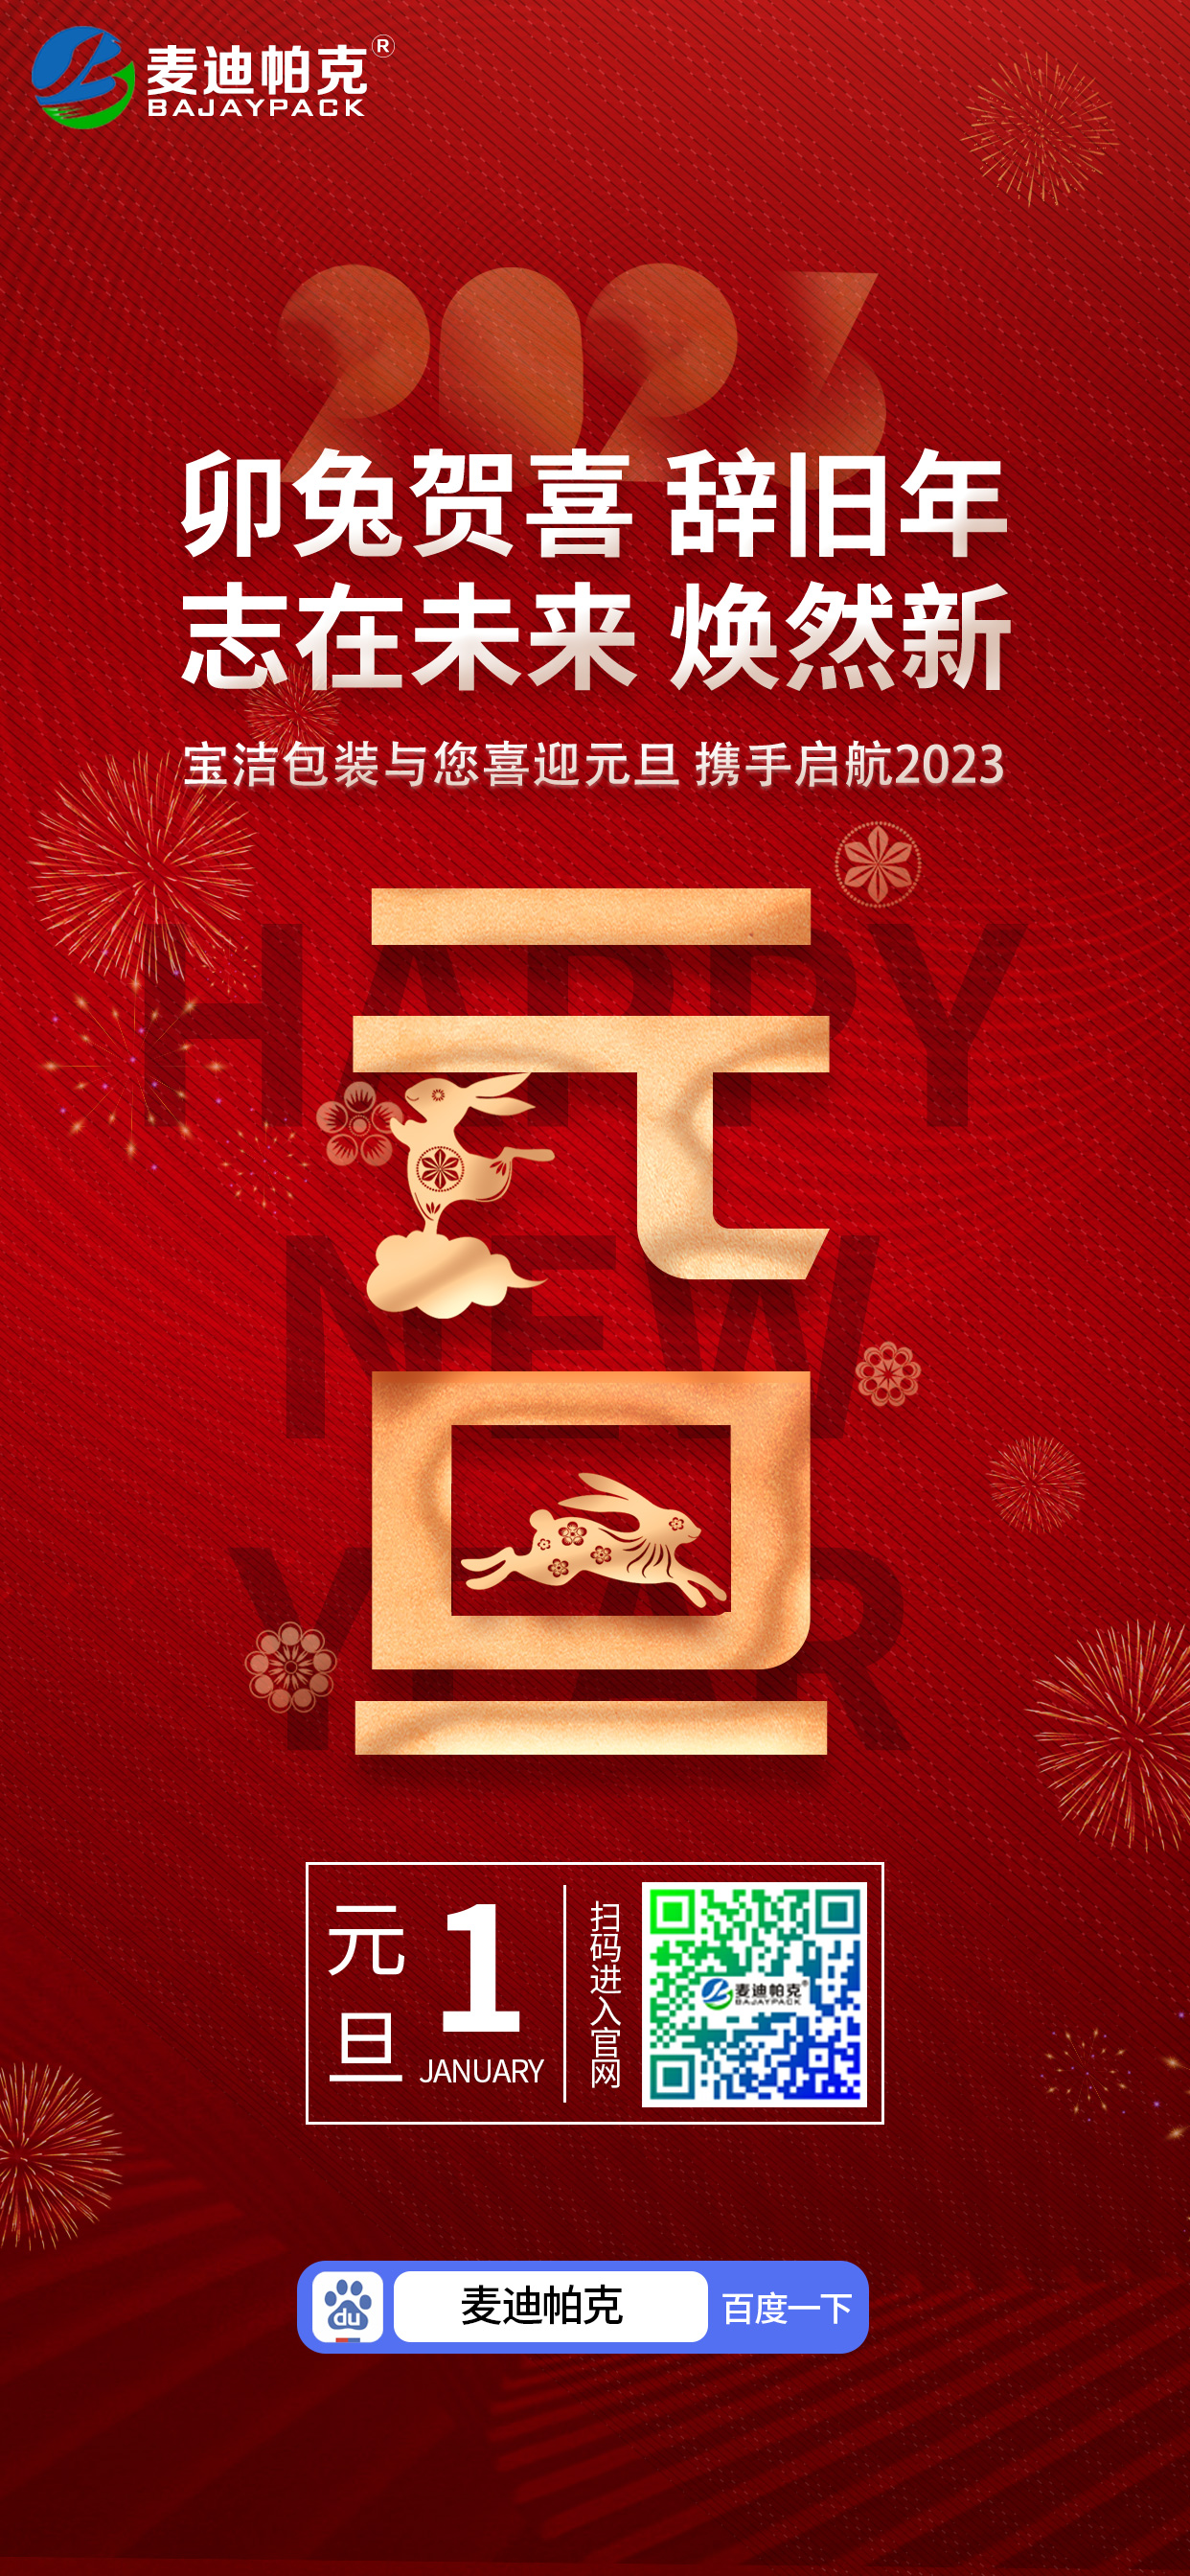 安慶市寶潔包裝有限公司祝大家元旦快樂！